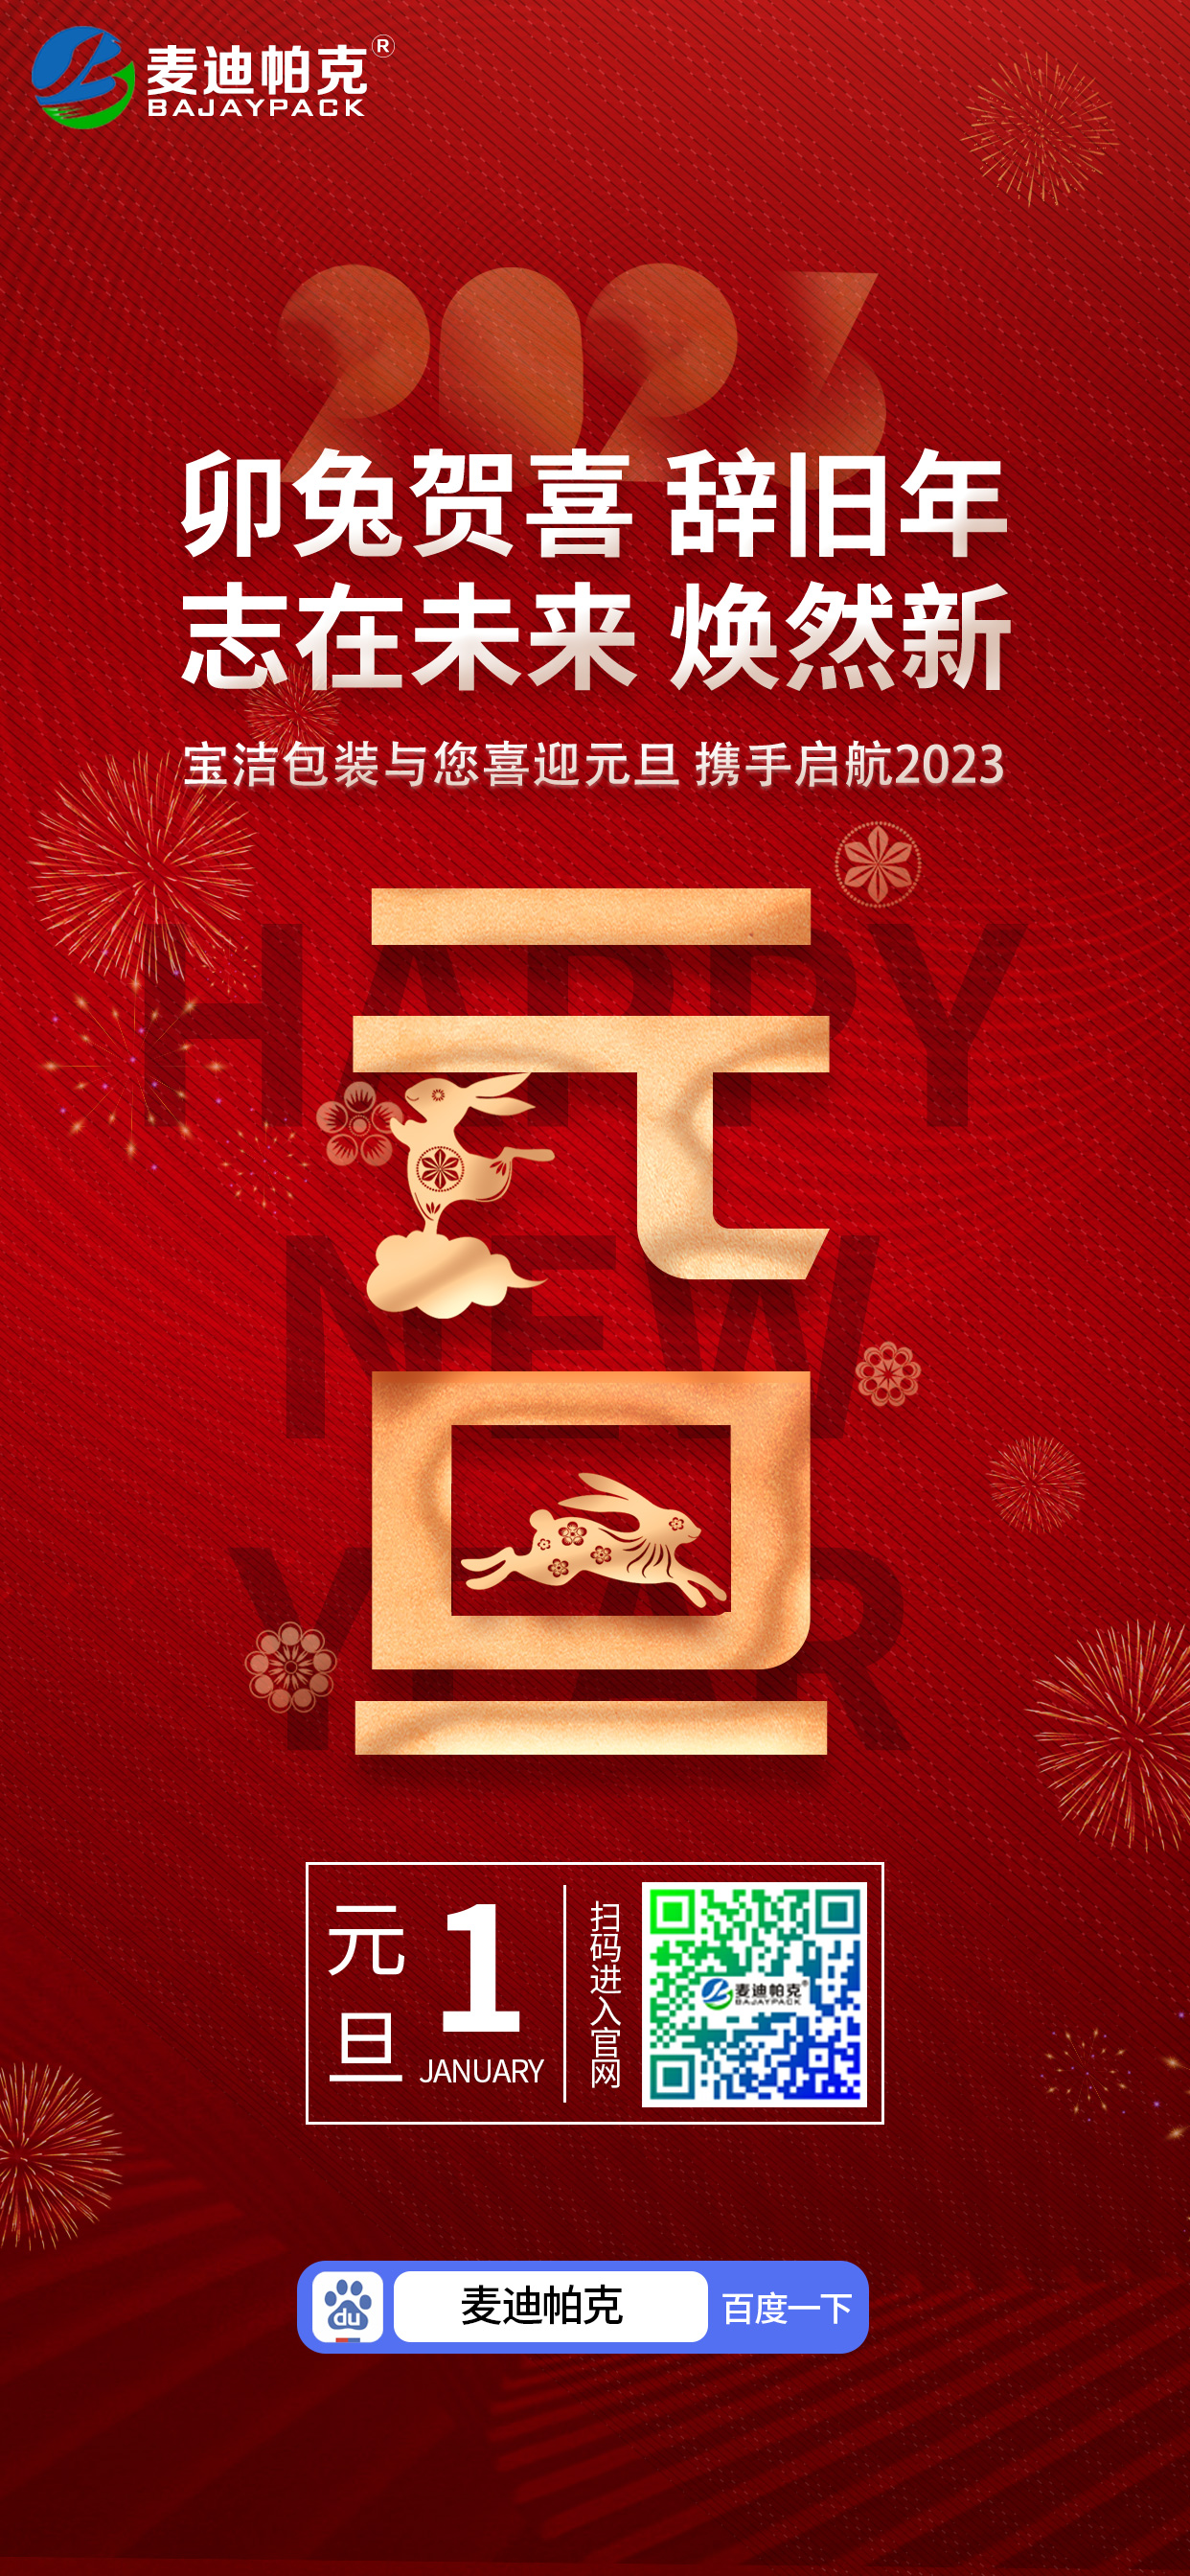 安慶市寶潔包裝有限公司祝大家元旦快樂！